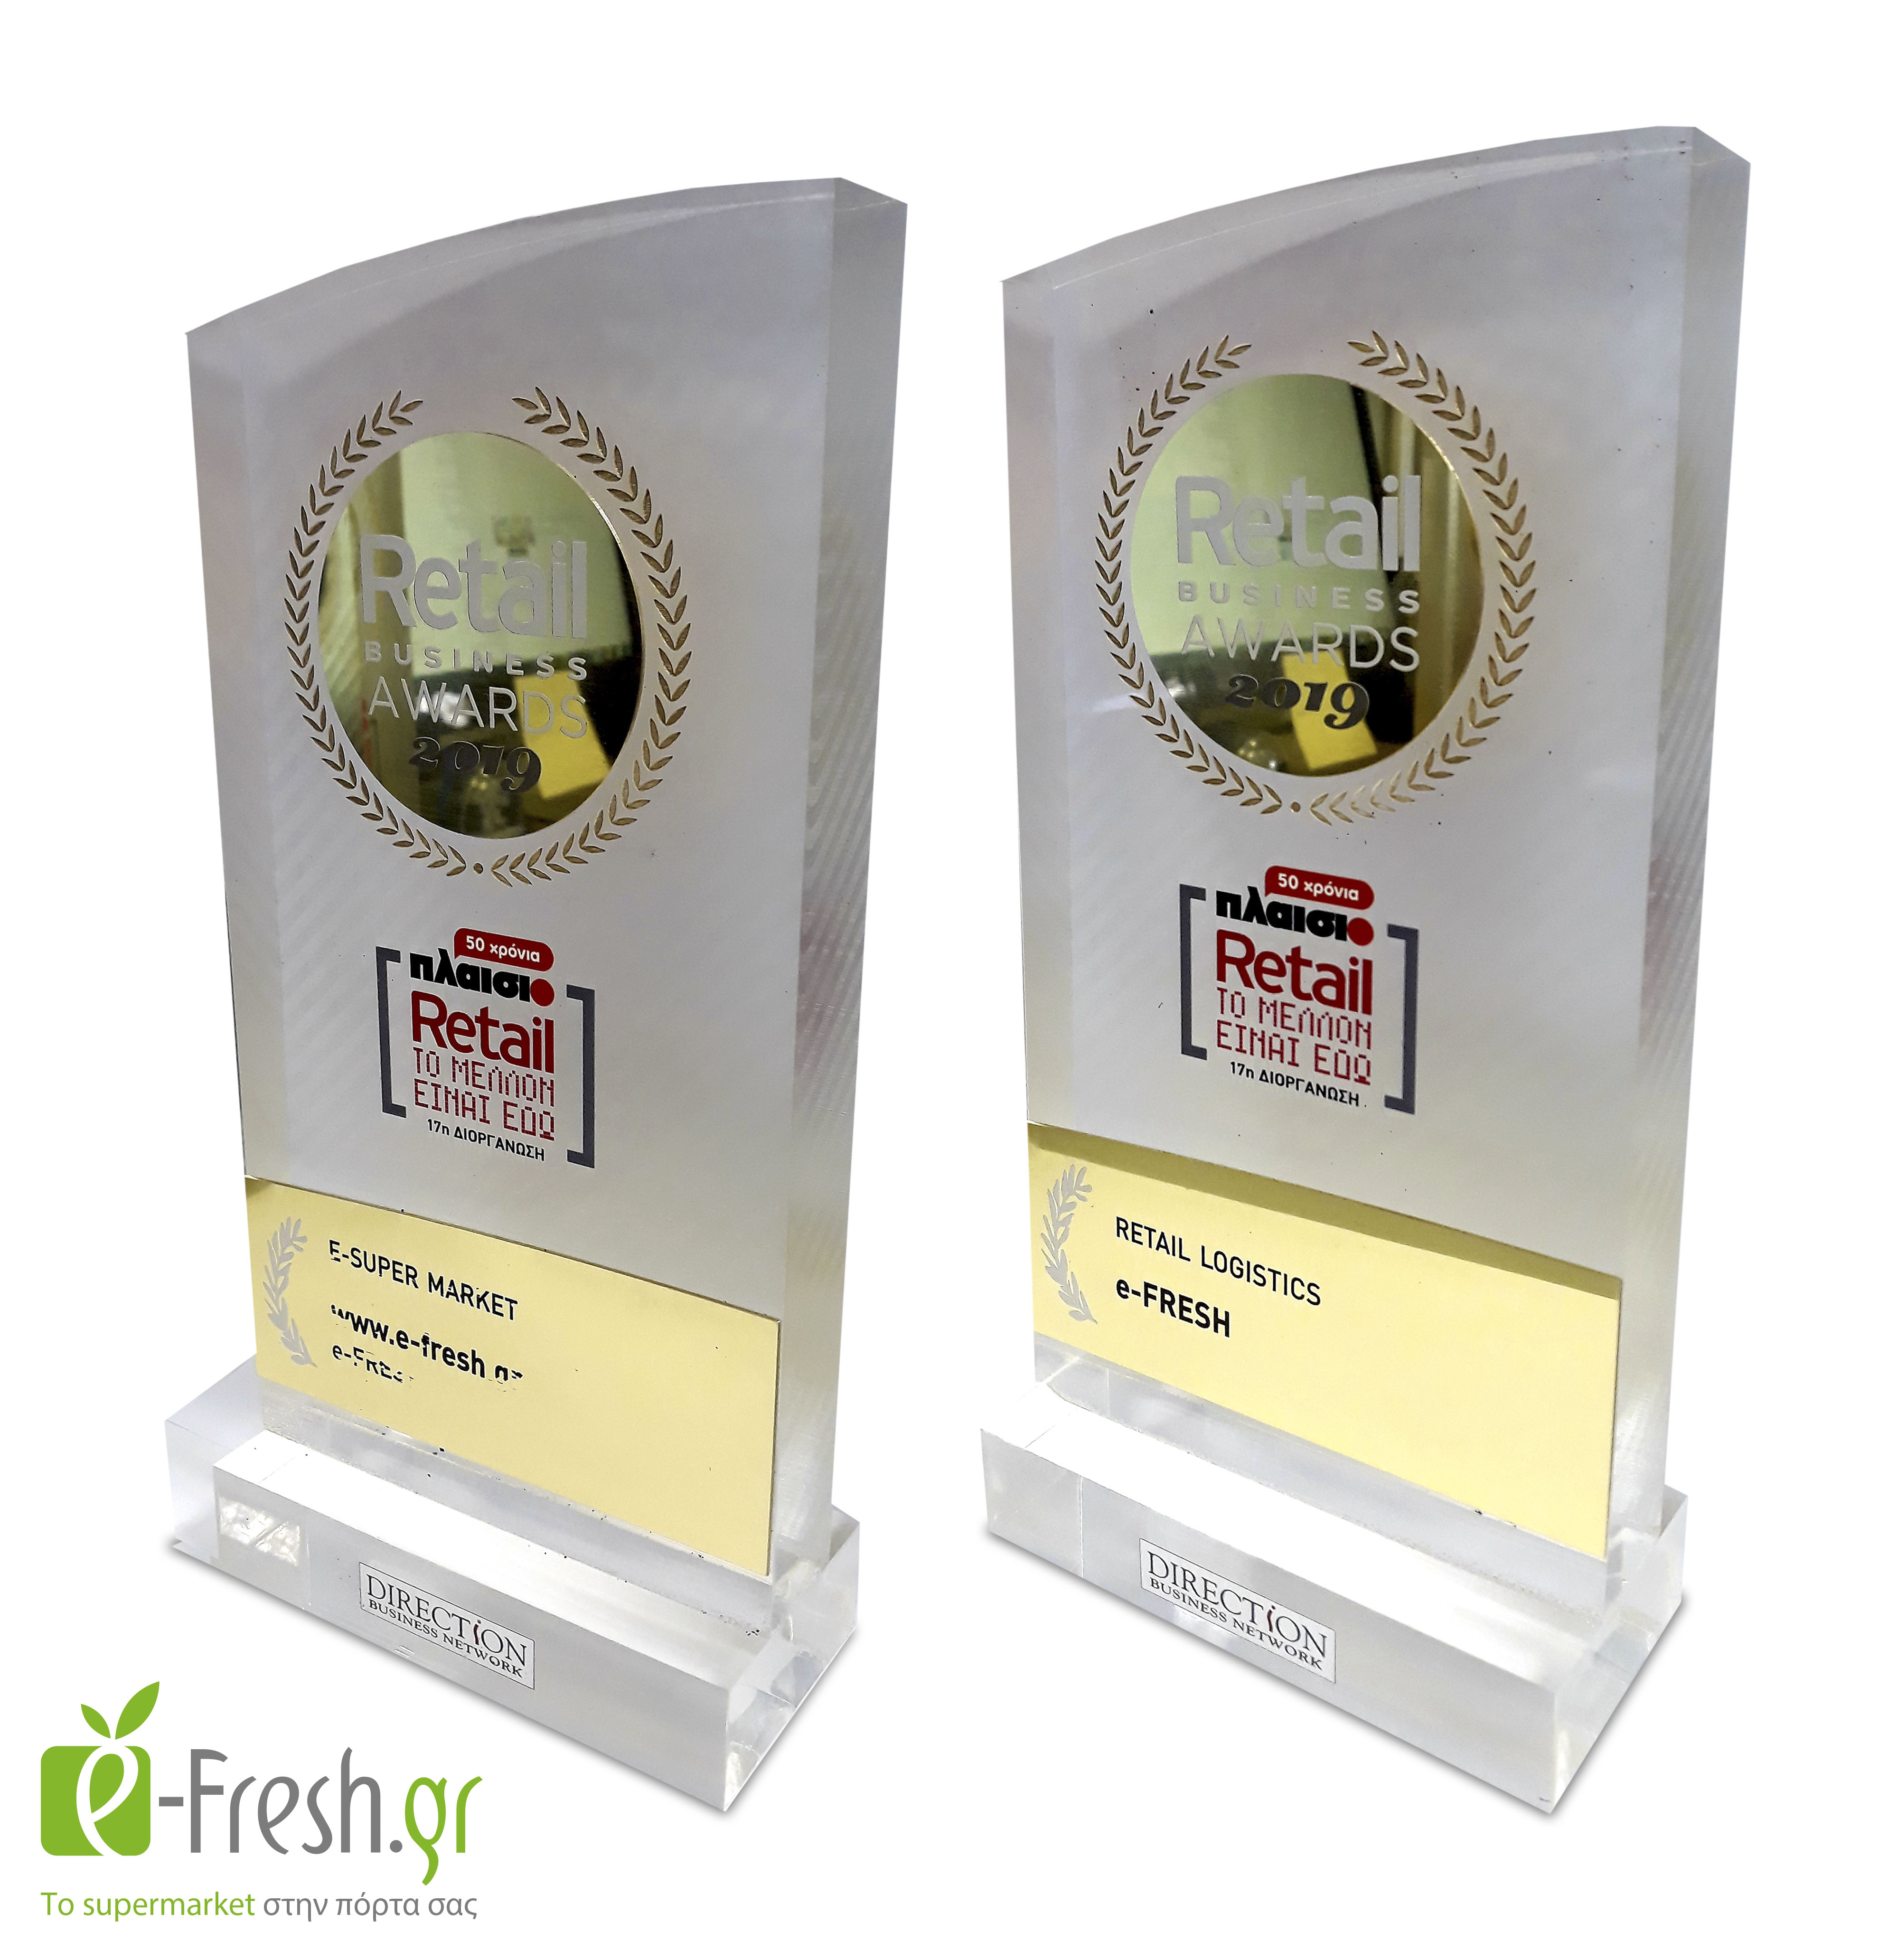 Δύο νέα βραβεία για την e-fresh.gr σε Logistics & E-supermarket